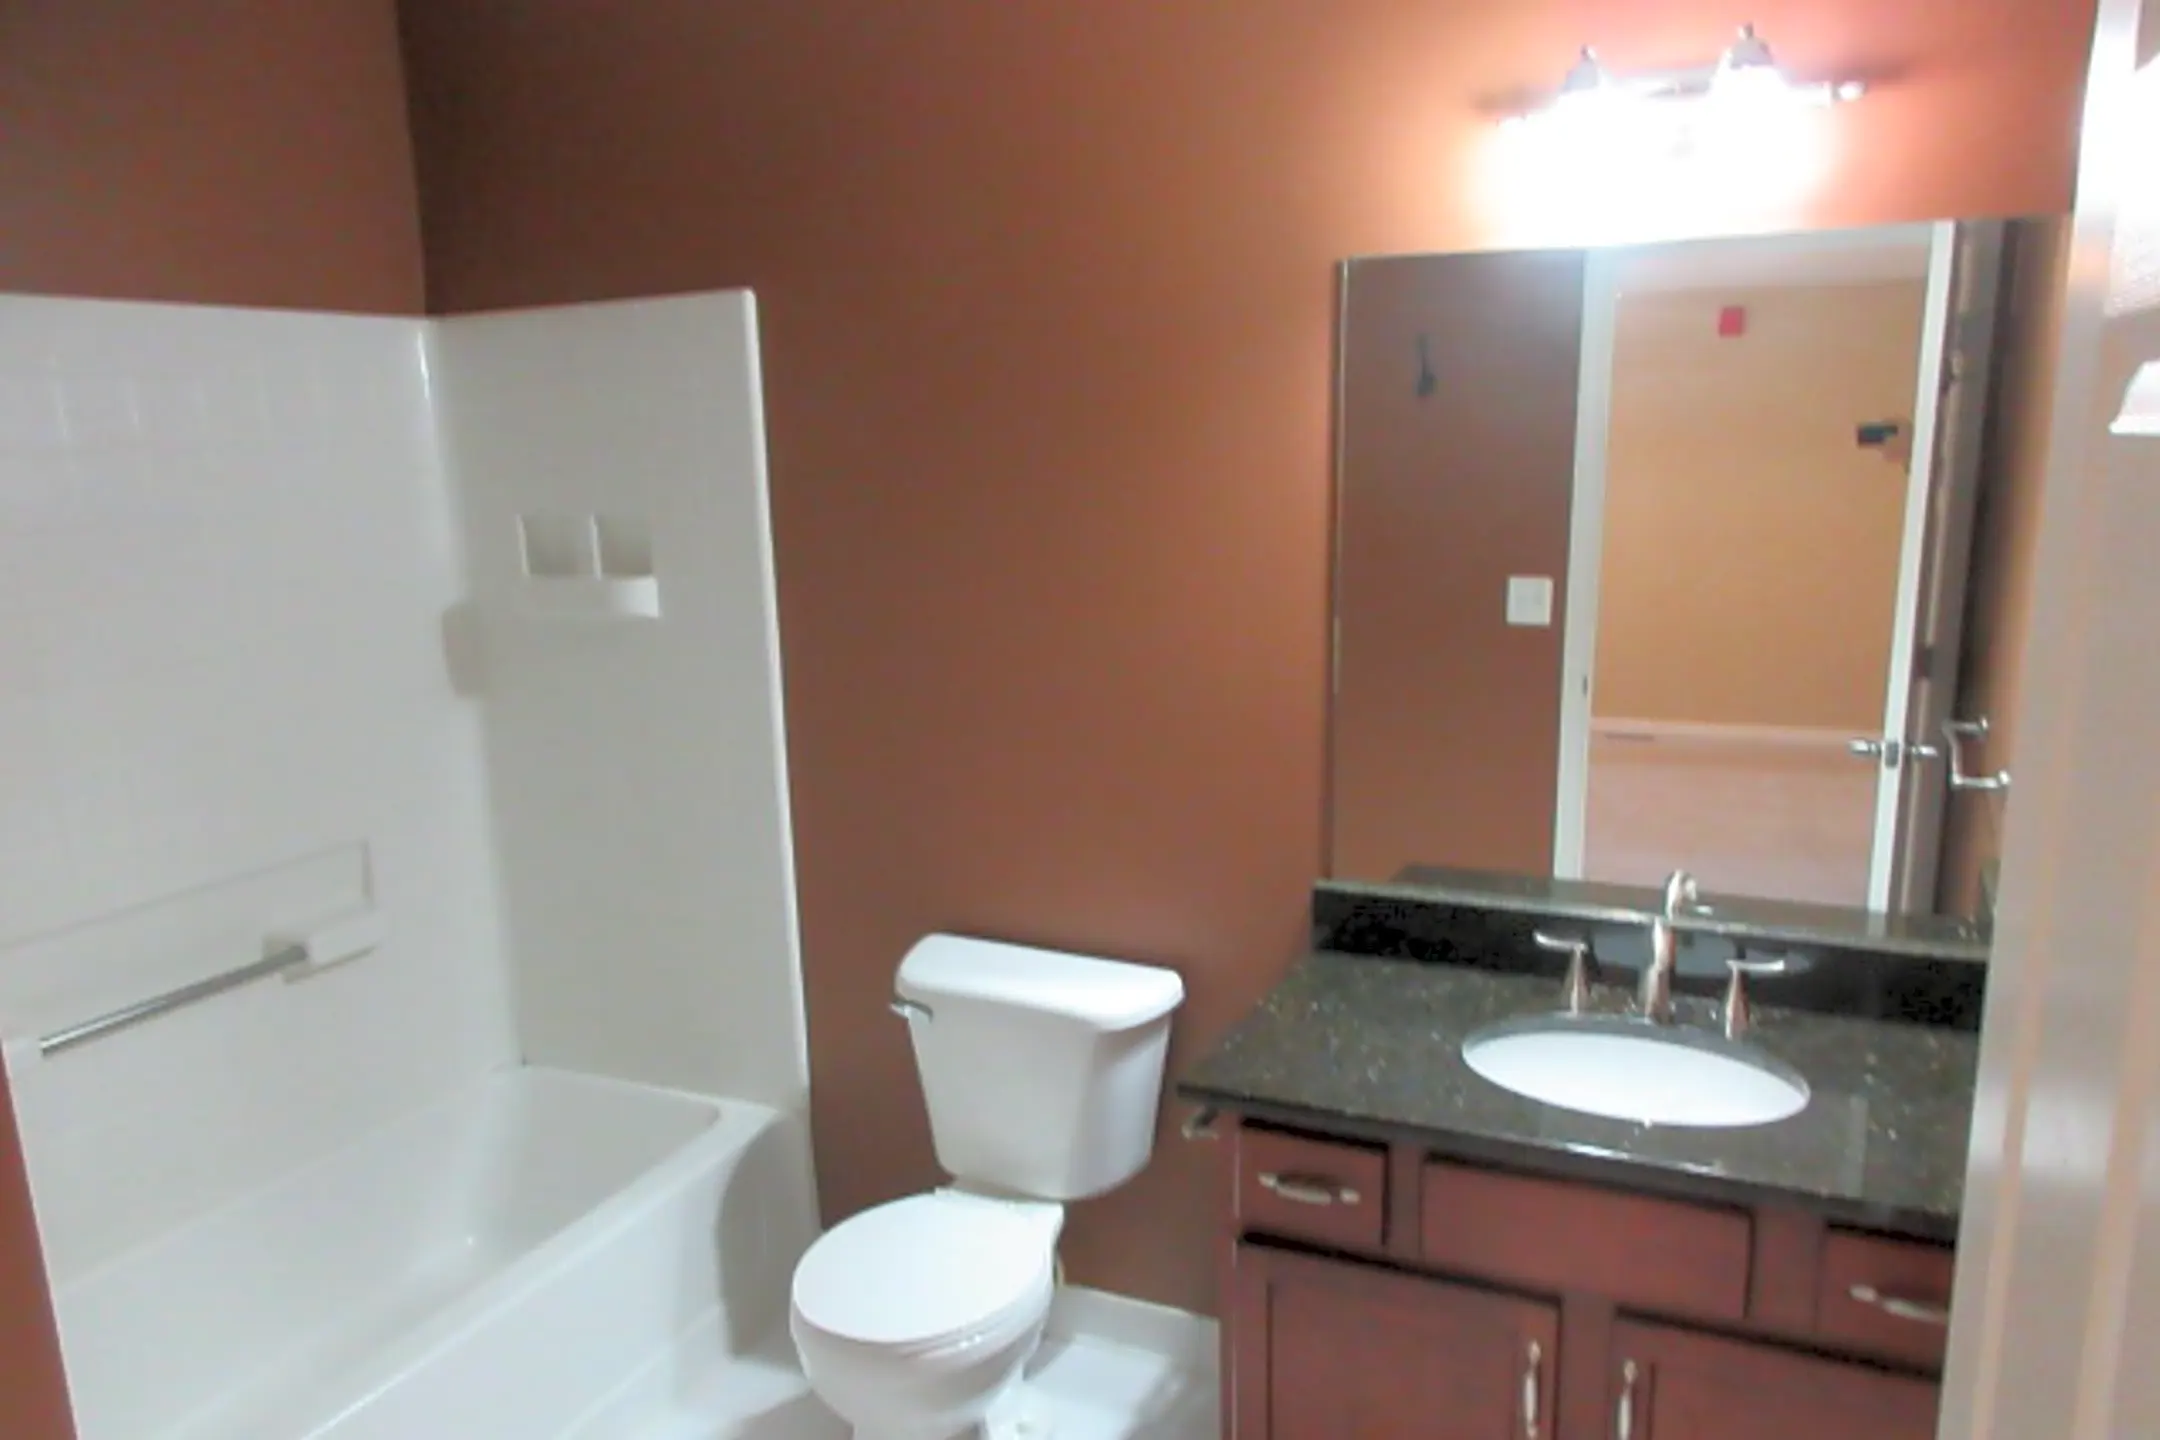 Bathroom - 25640 Portico Lane - Novi, MI